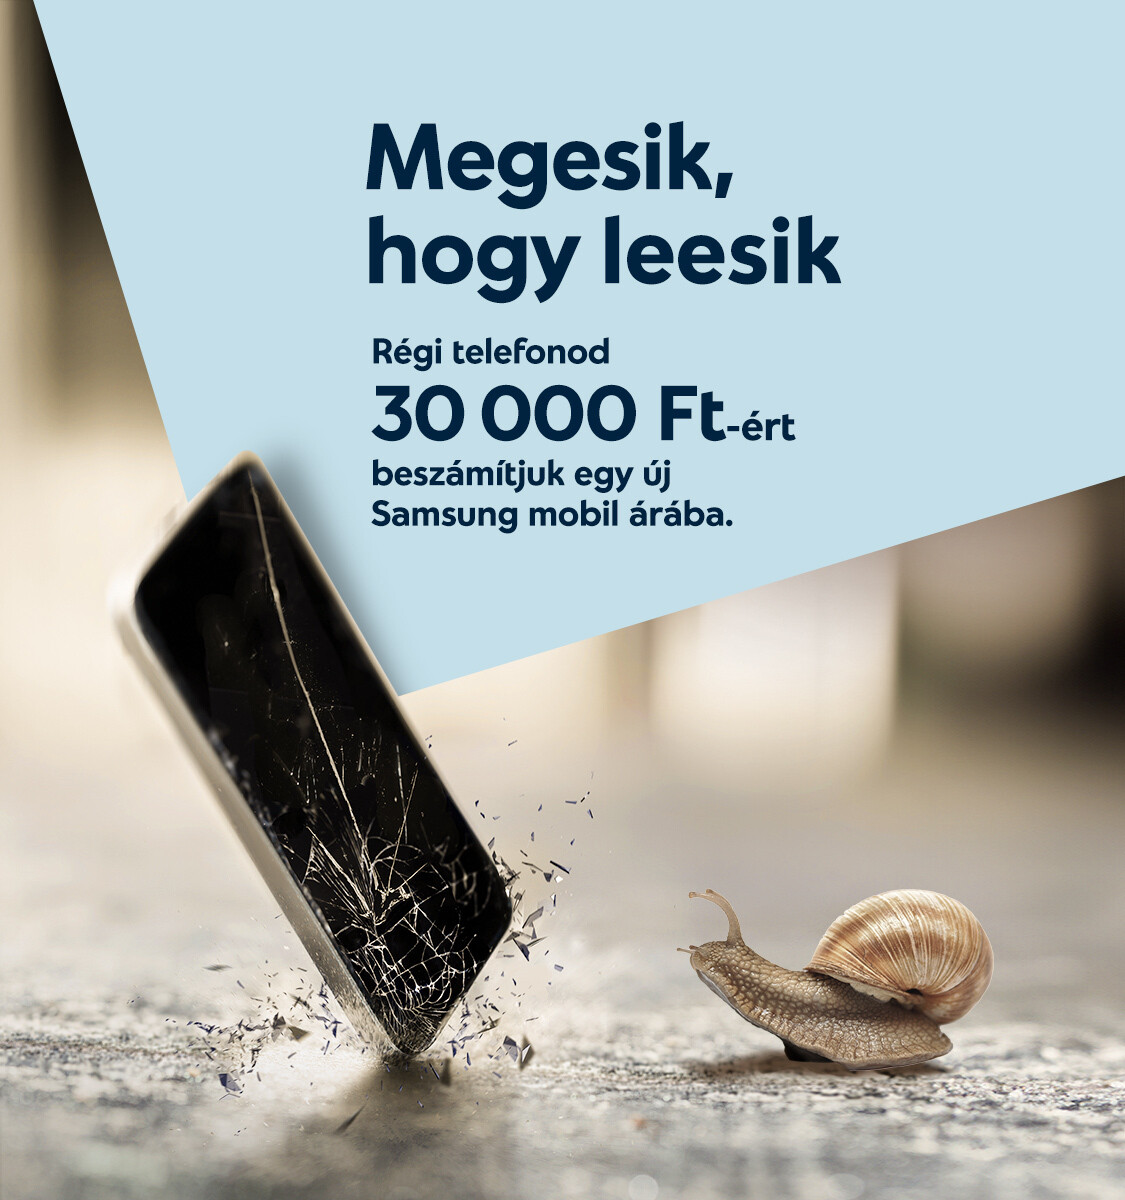 Megesik, hogy leesik. Régi telefonod 30 000 FT-ért beszámítjuk egy új Samsung mobil árába.